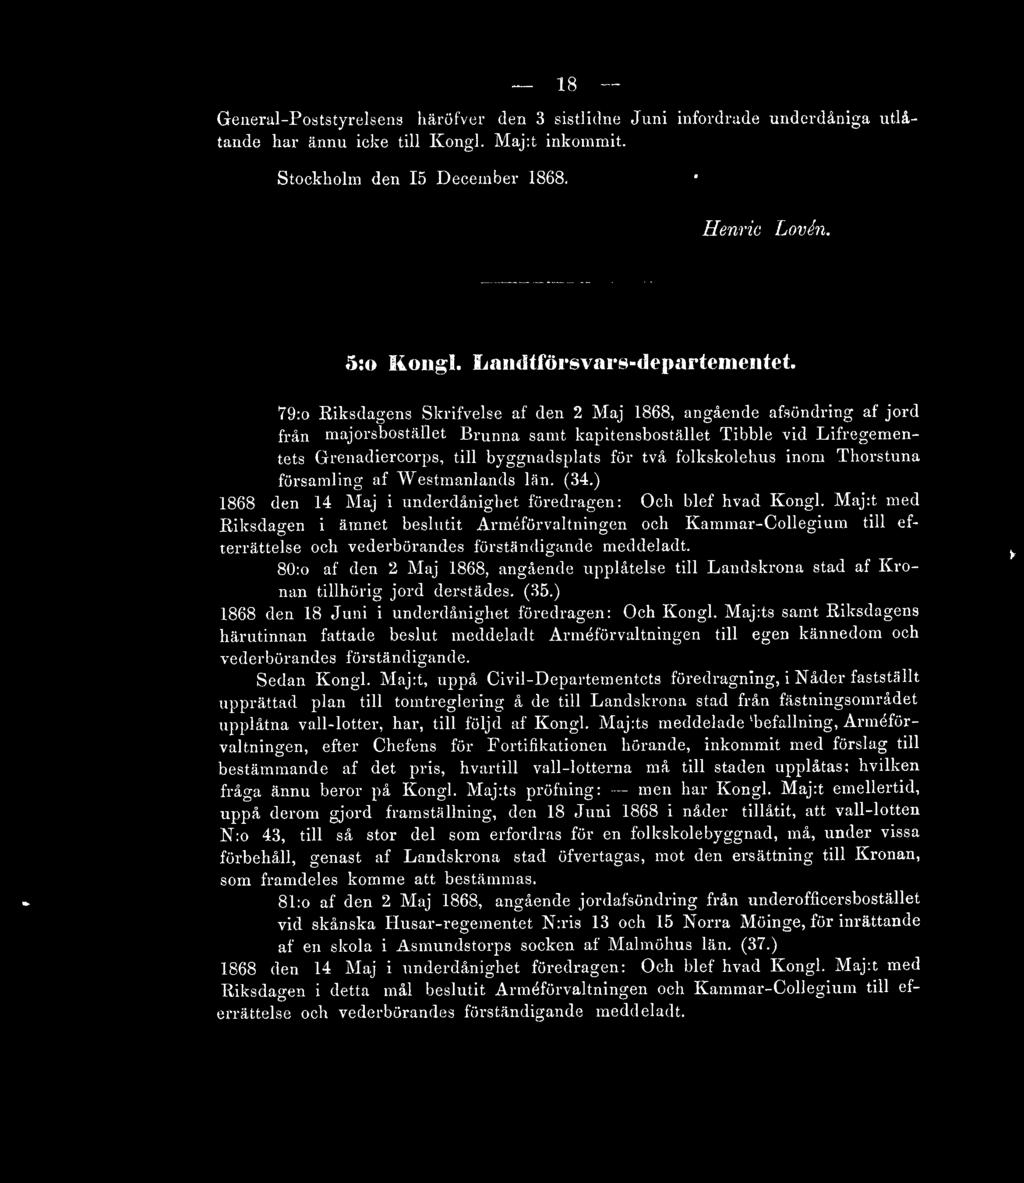 79:o Riksdagens Skrifvelse af den 2 Maj 1868, angående afsöndring af jord från majorsbostället Brunna samt kapitensbostället Tibble vid Lifregementets Grenadiercorps, till byggnadsplats för två